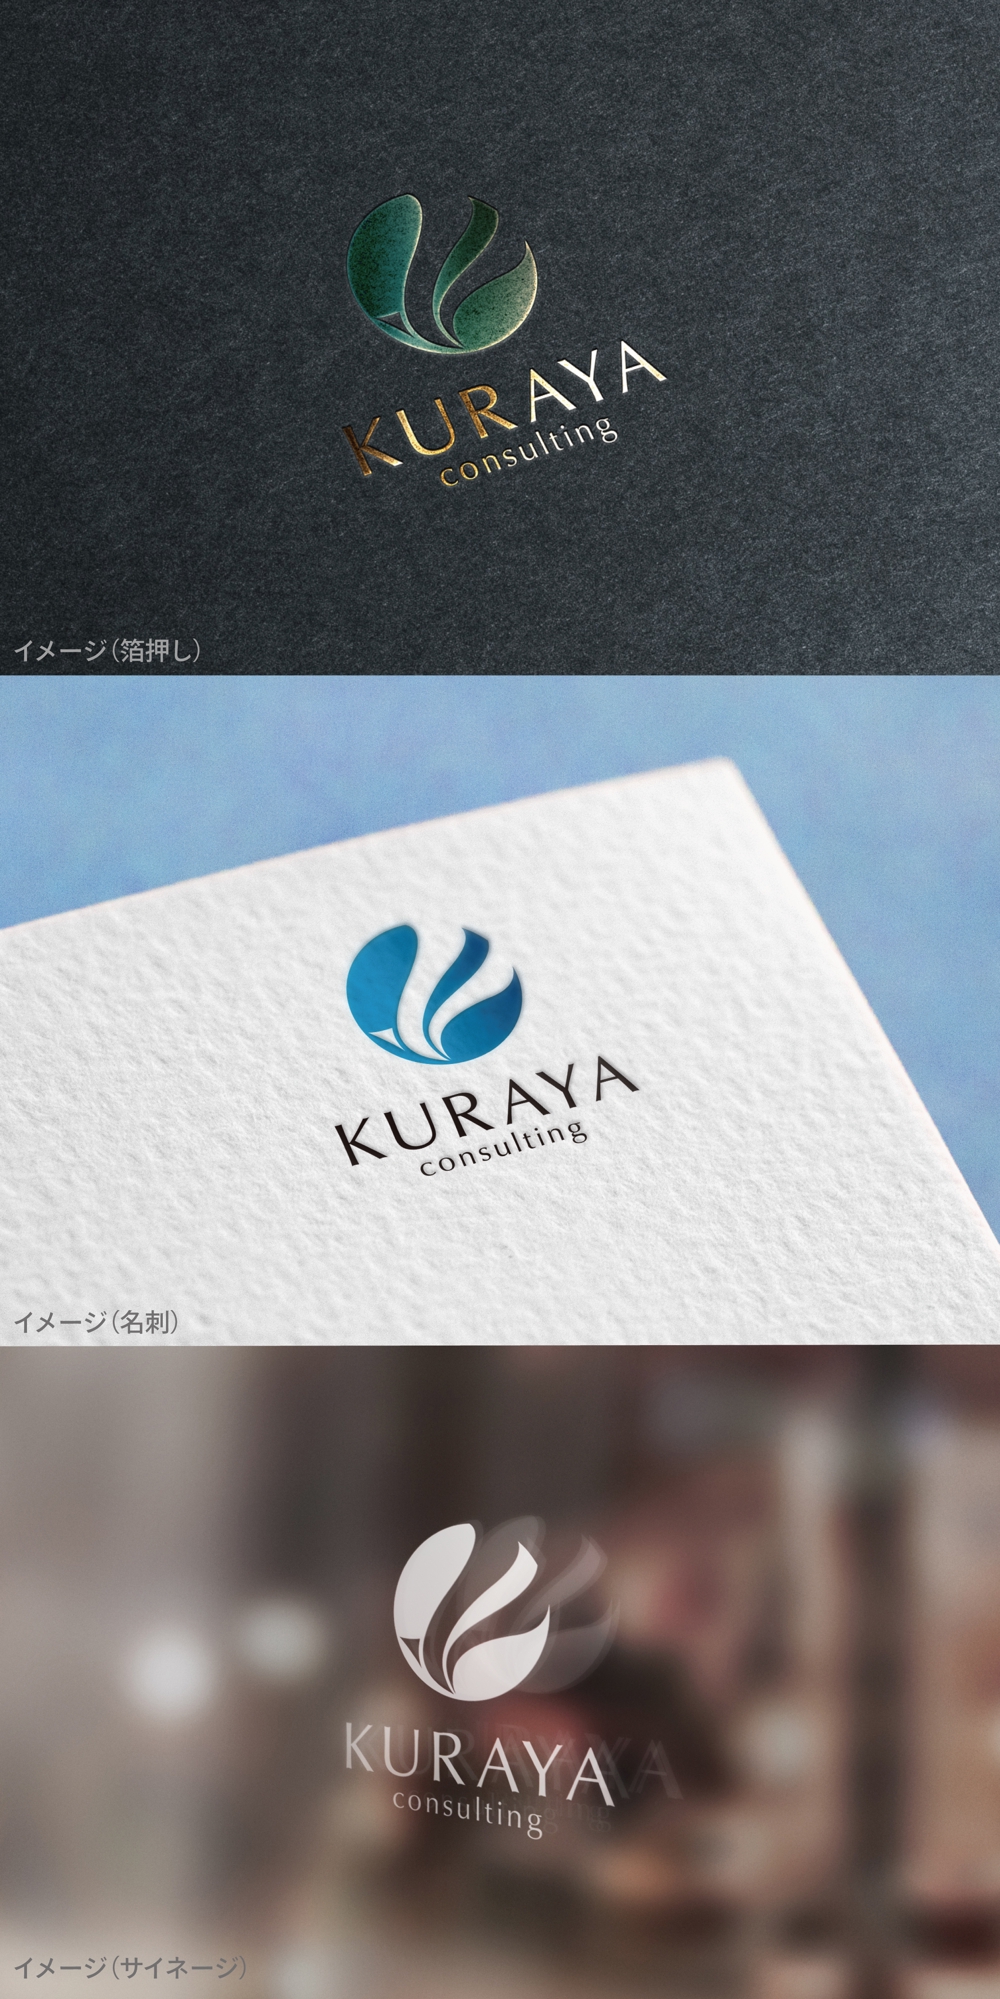 KURAYA_logo01_01.jpg